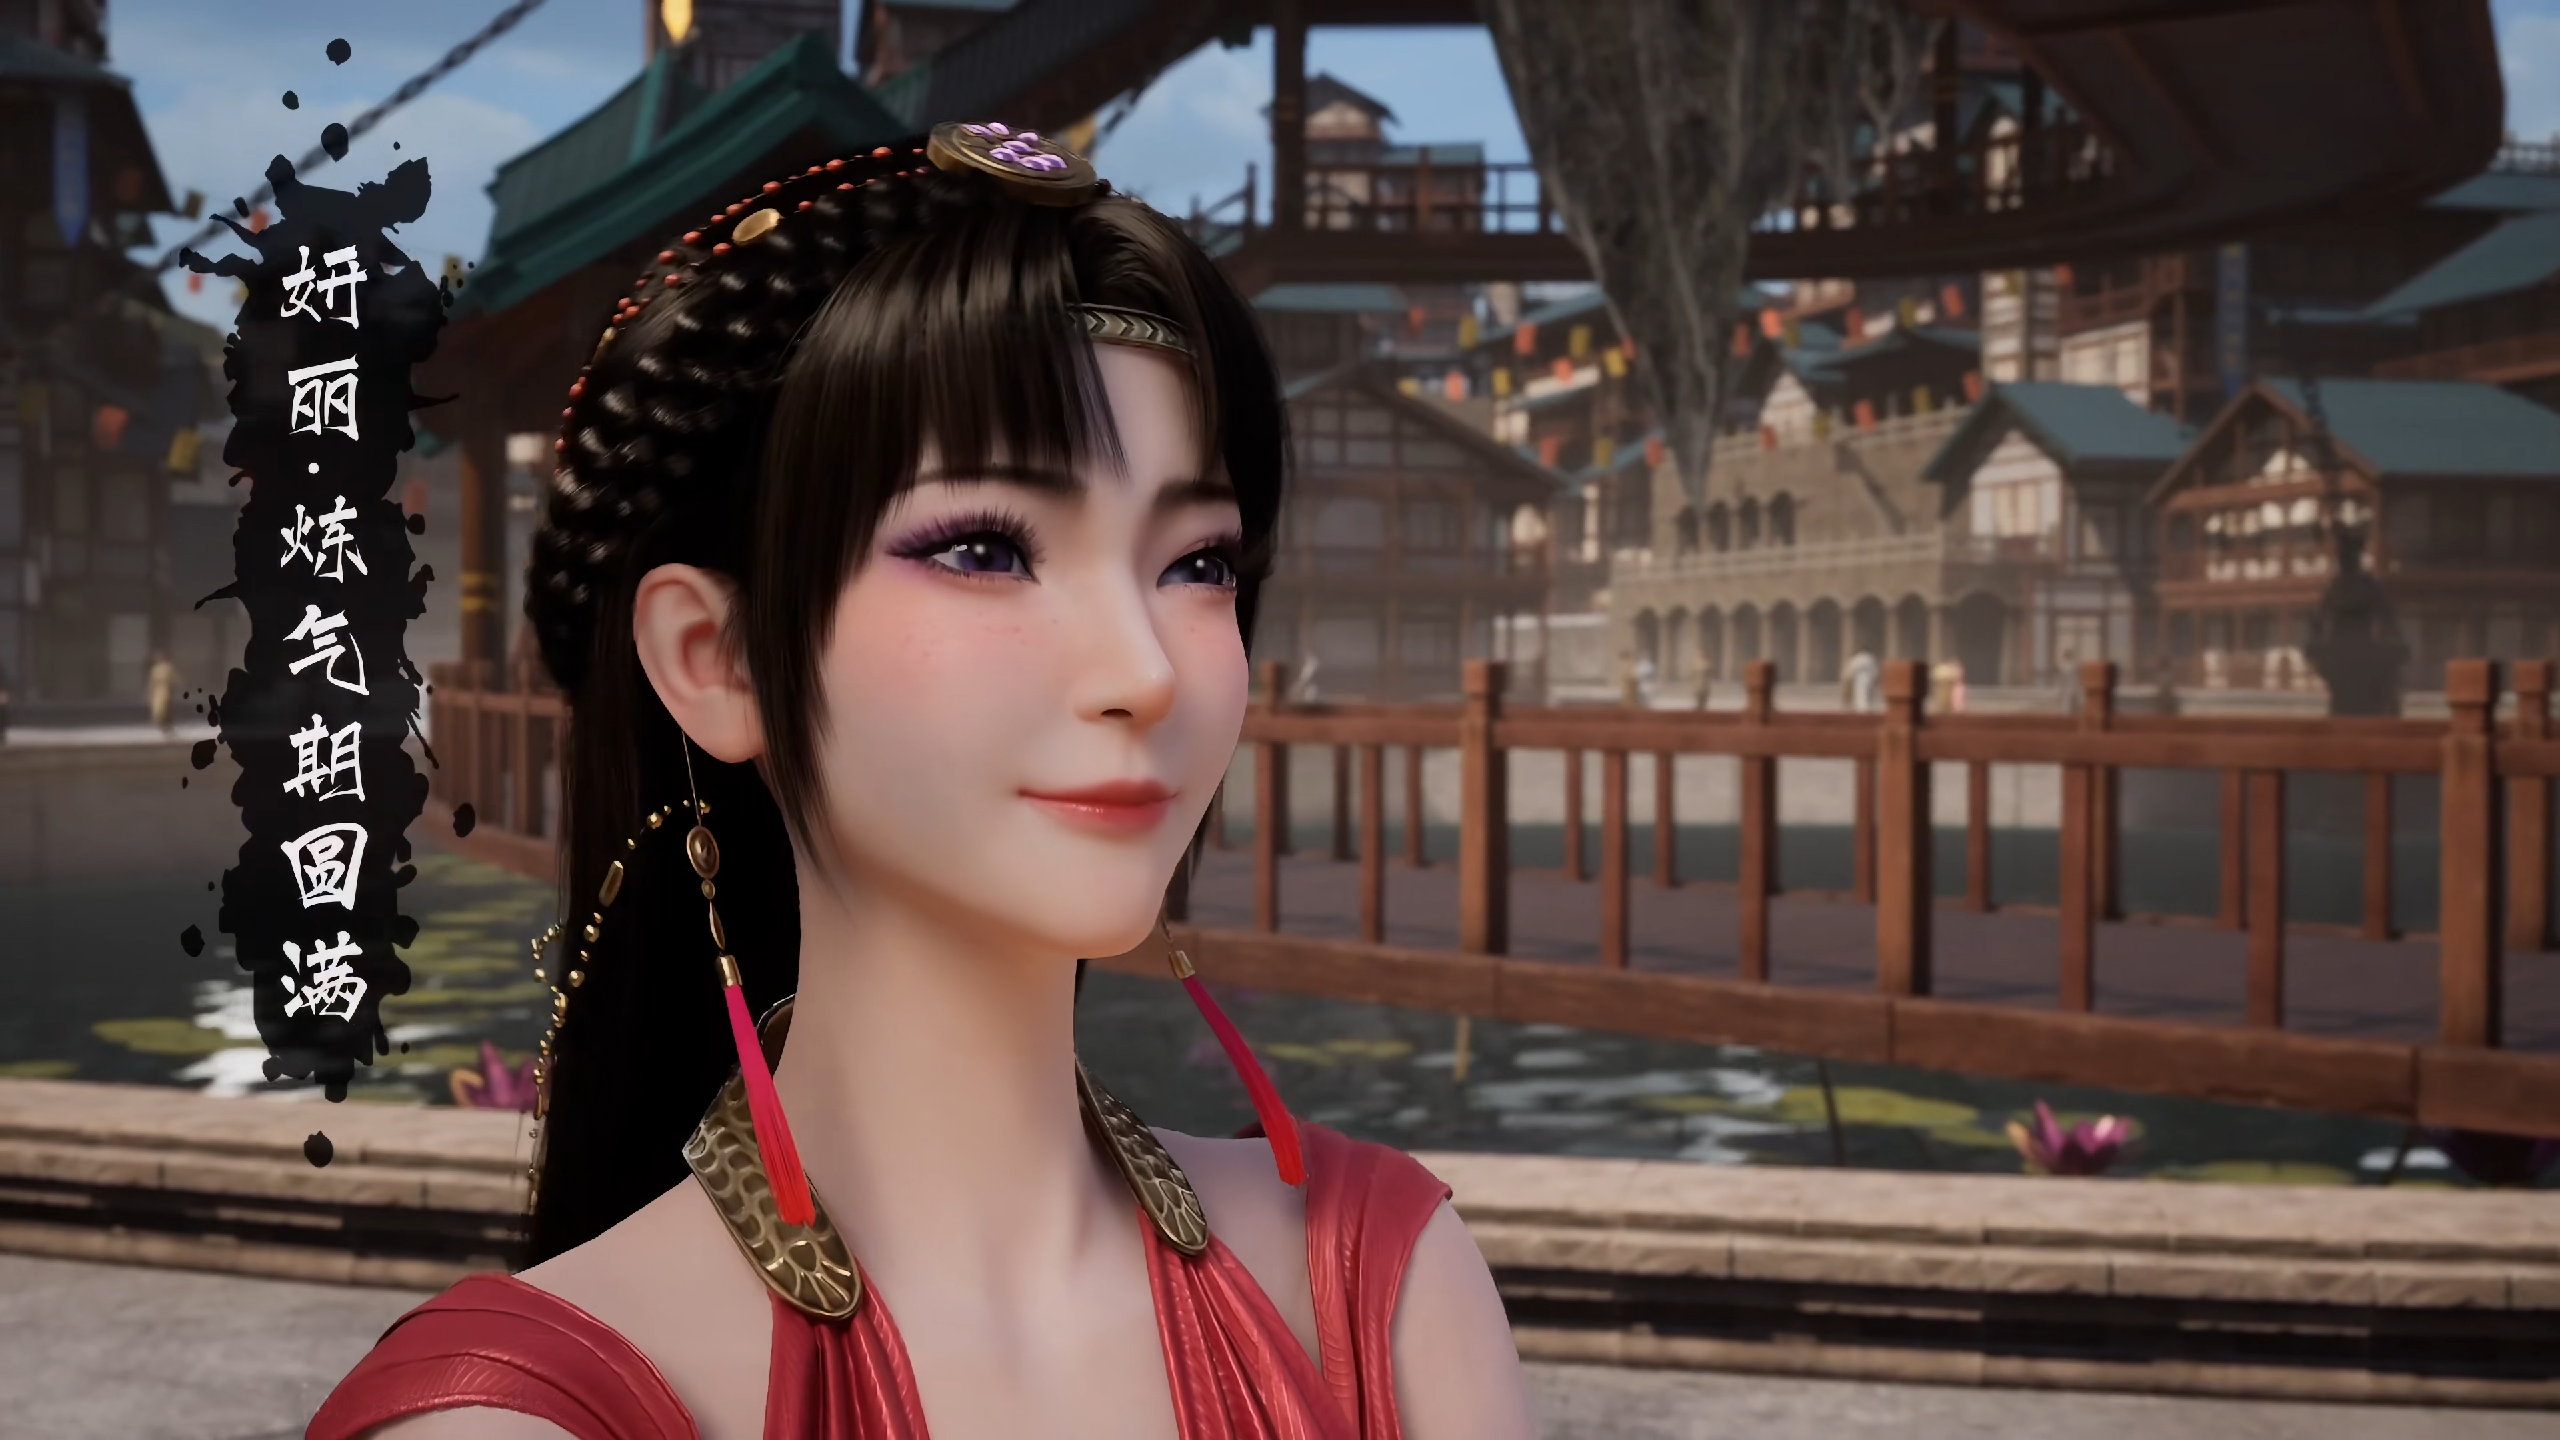 General 2560x1440 Asian women video game girls PC gaming smiling fantasy girl anime games video game characters CGI video games fan ren xiu xian zhuan